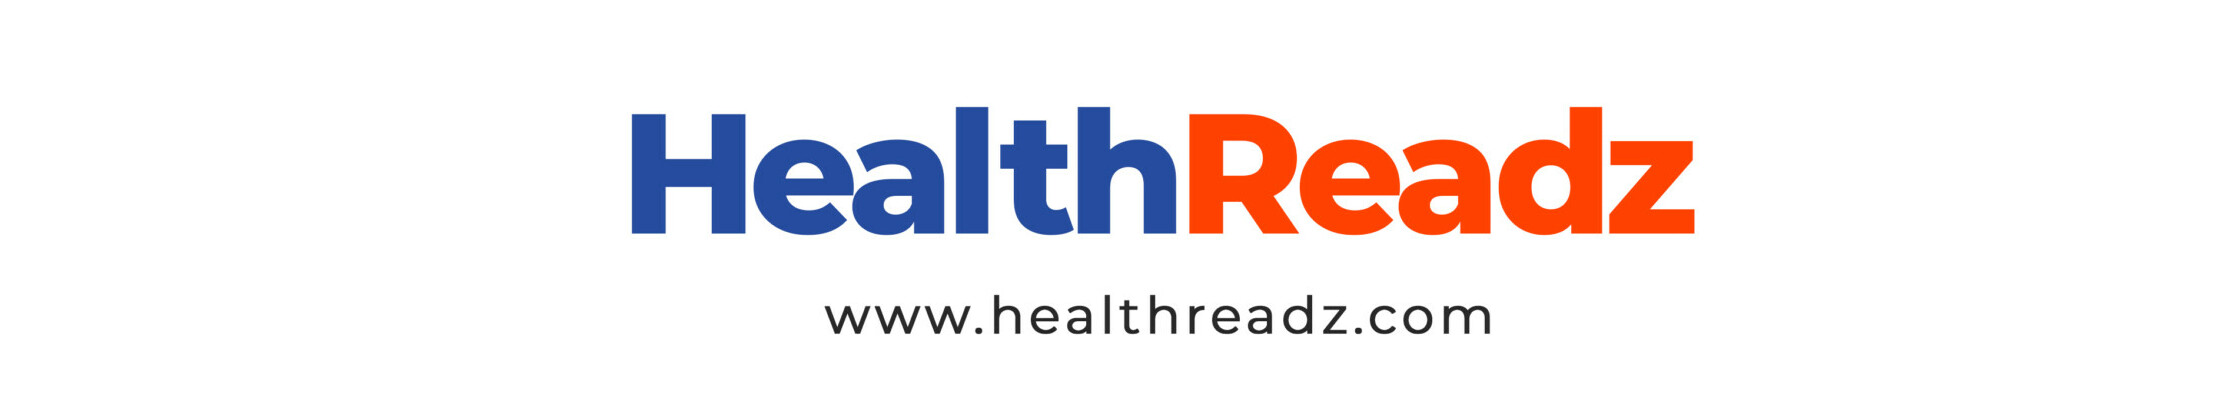 HealthReadz.com